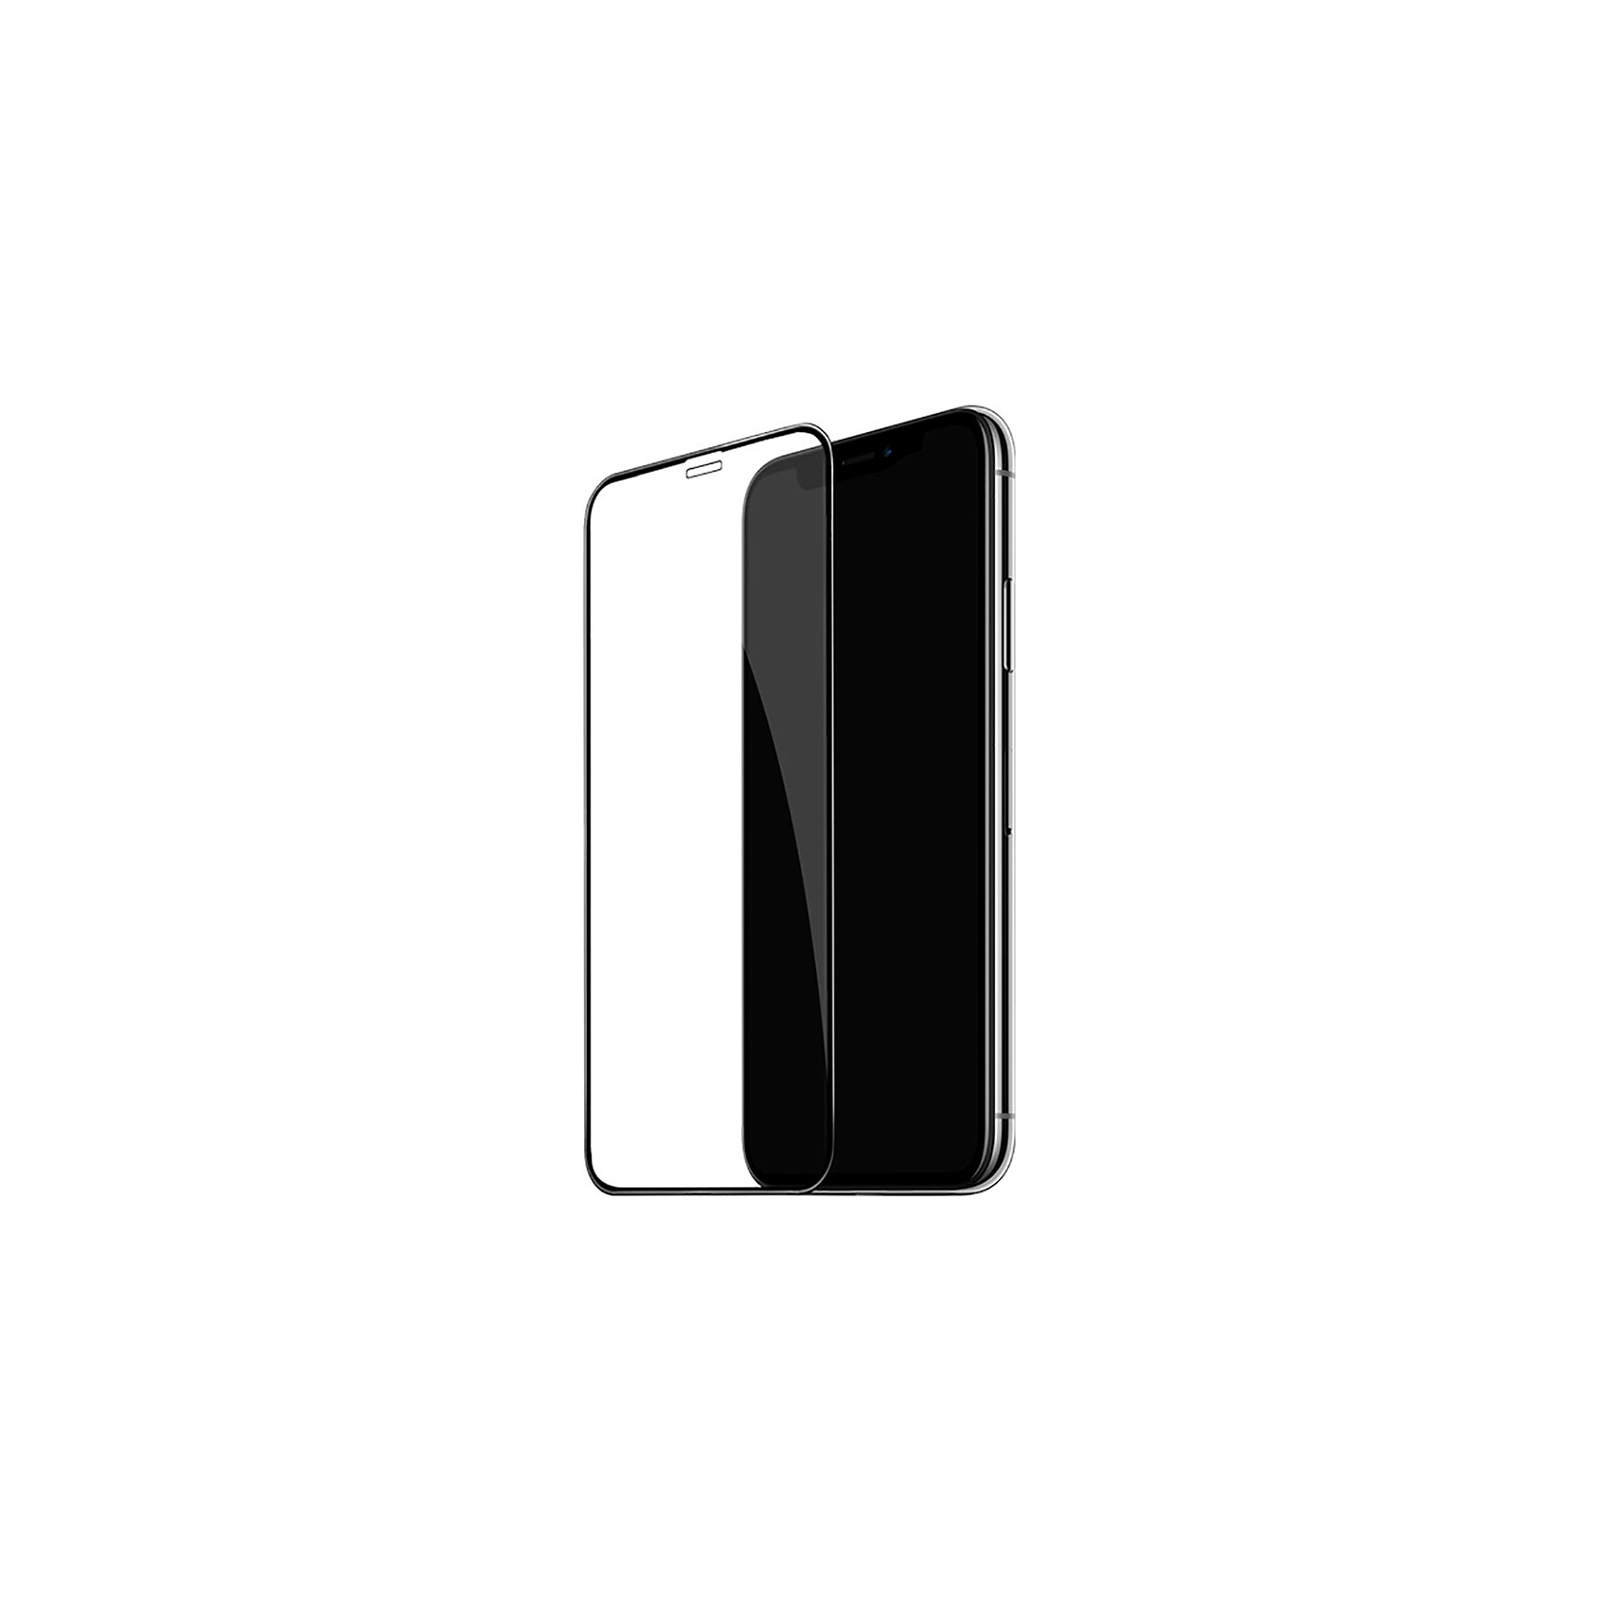 Стекло защитное PowerPlant Full screen Apple iPhone 11/XR, Black (GL607402)